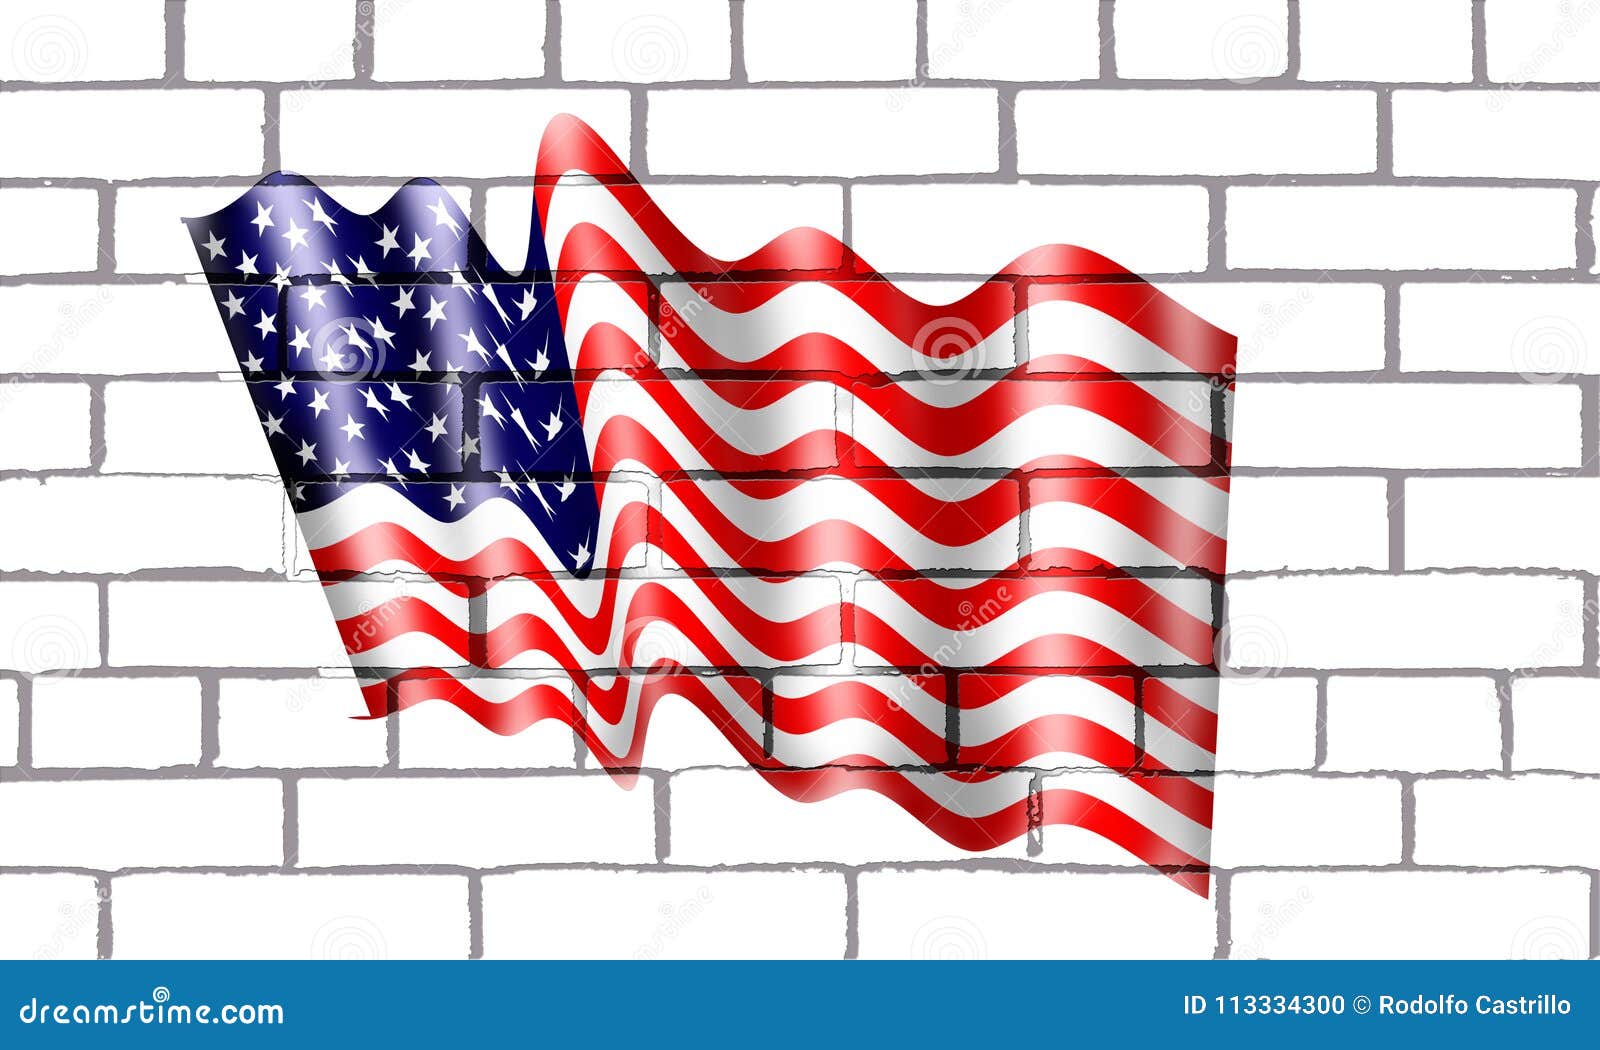 bandera americana en pared de labrillos